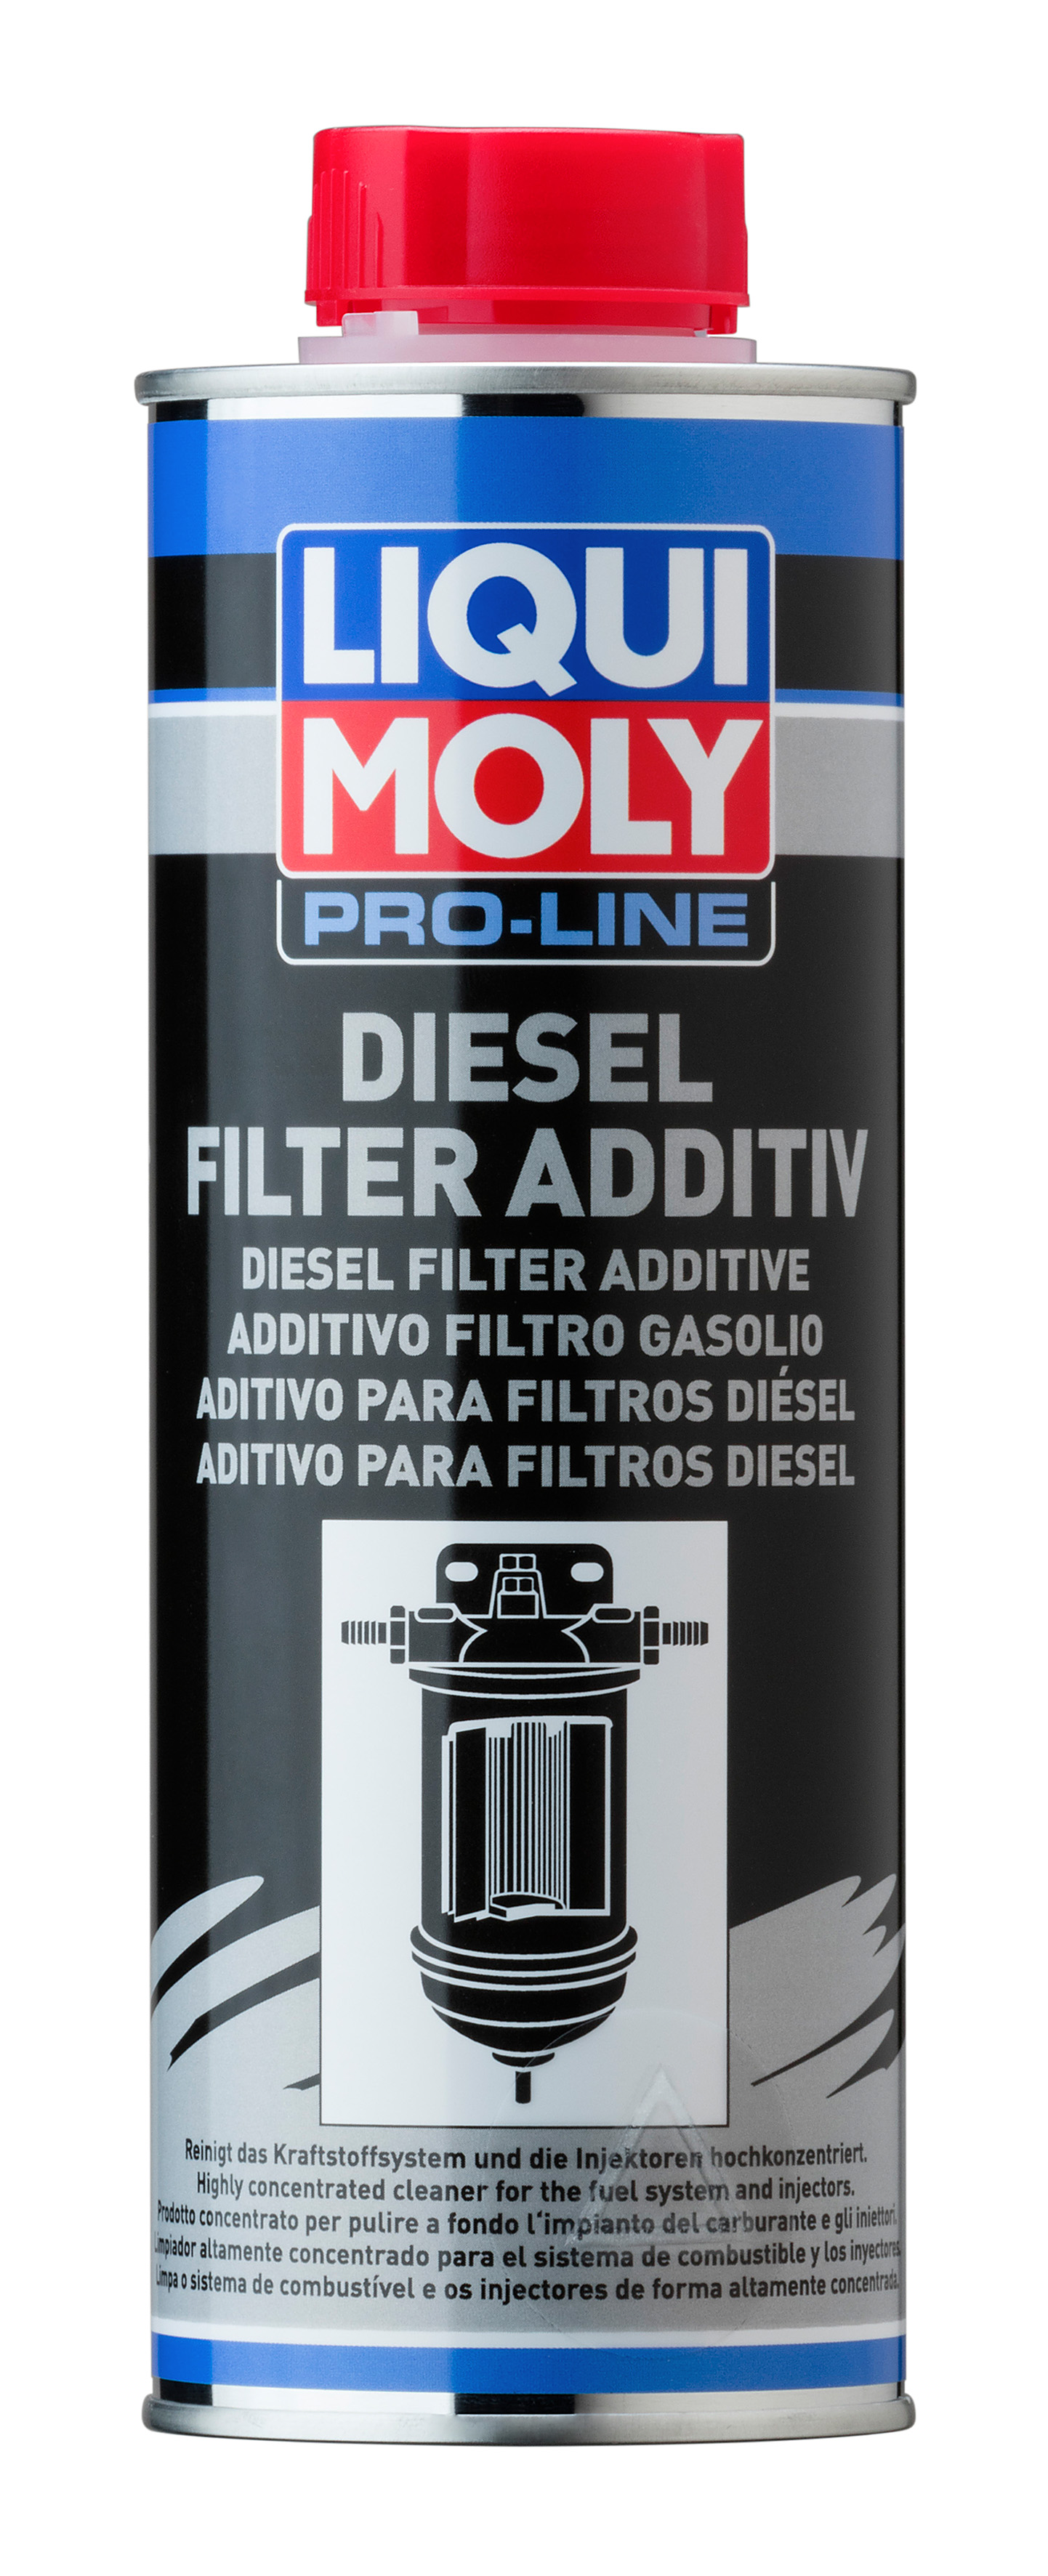 Присадка для дизельных топливных фильтров Liqui Moly Pro-Line Diesel Filter Additive